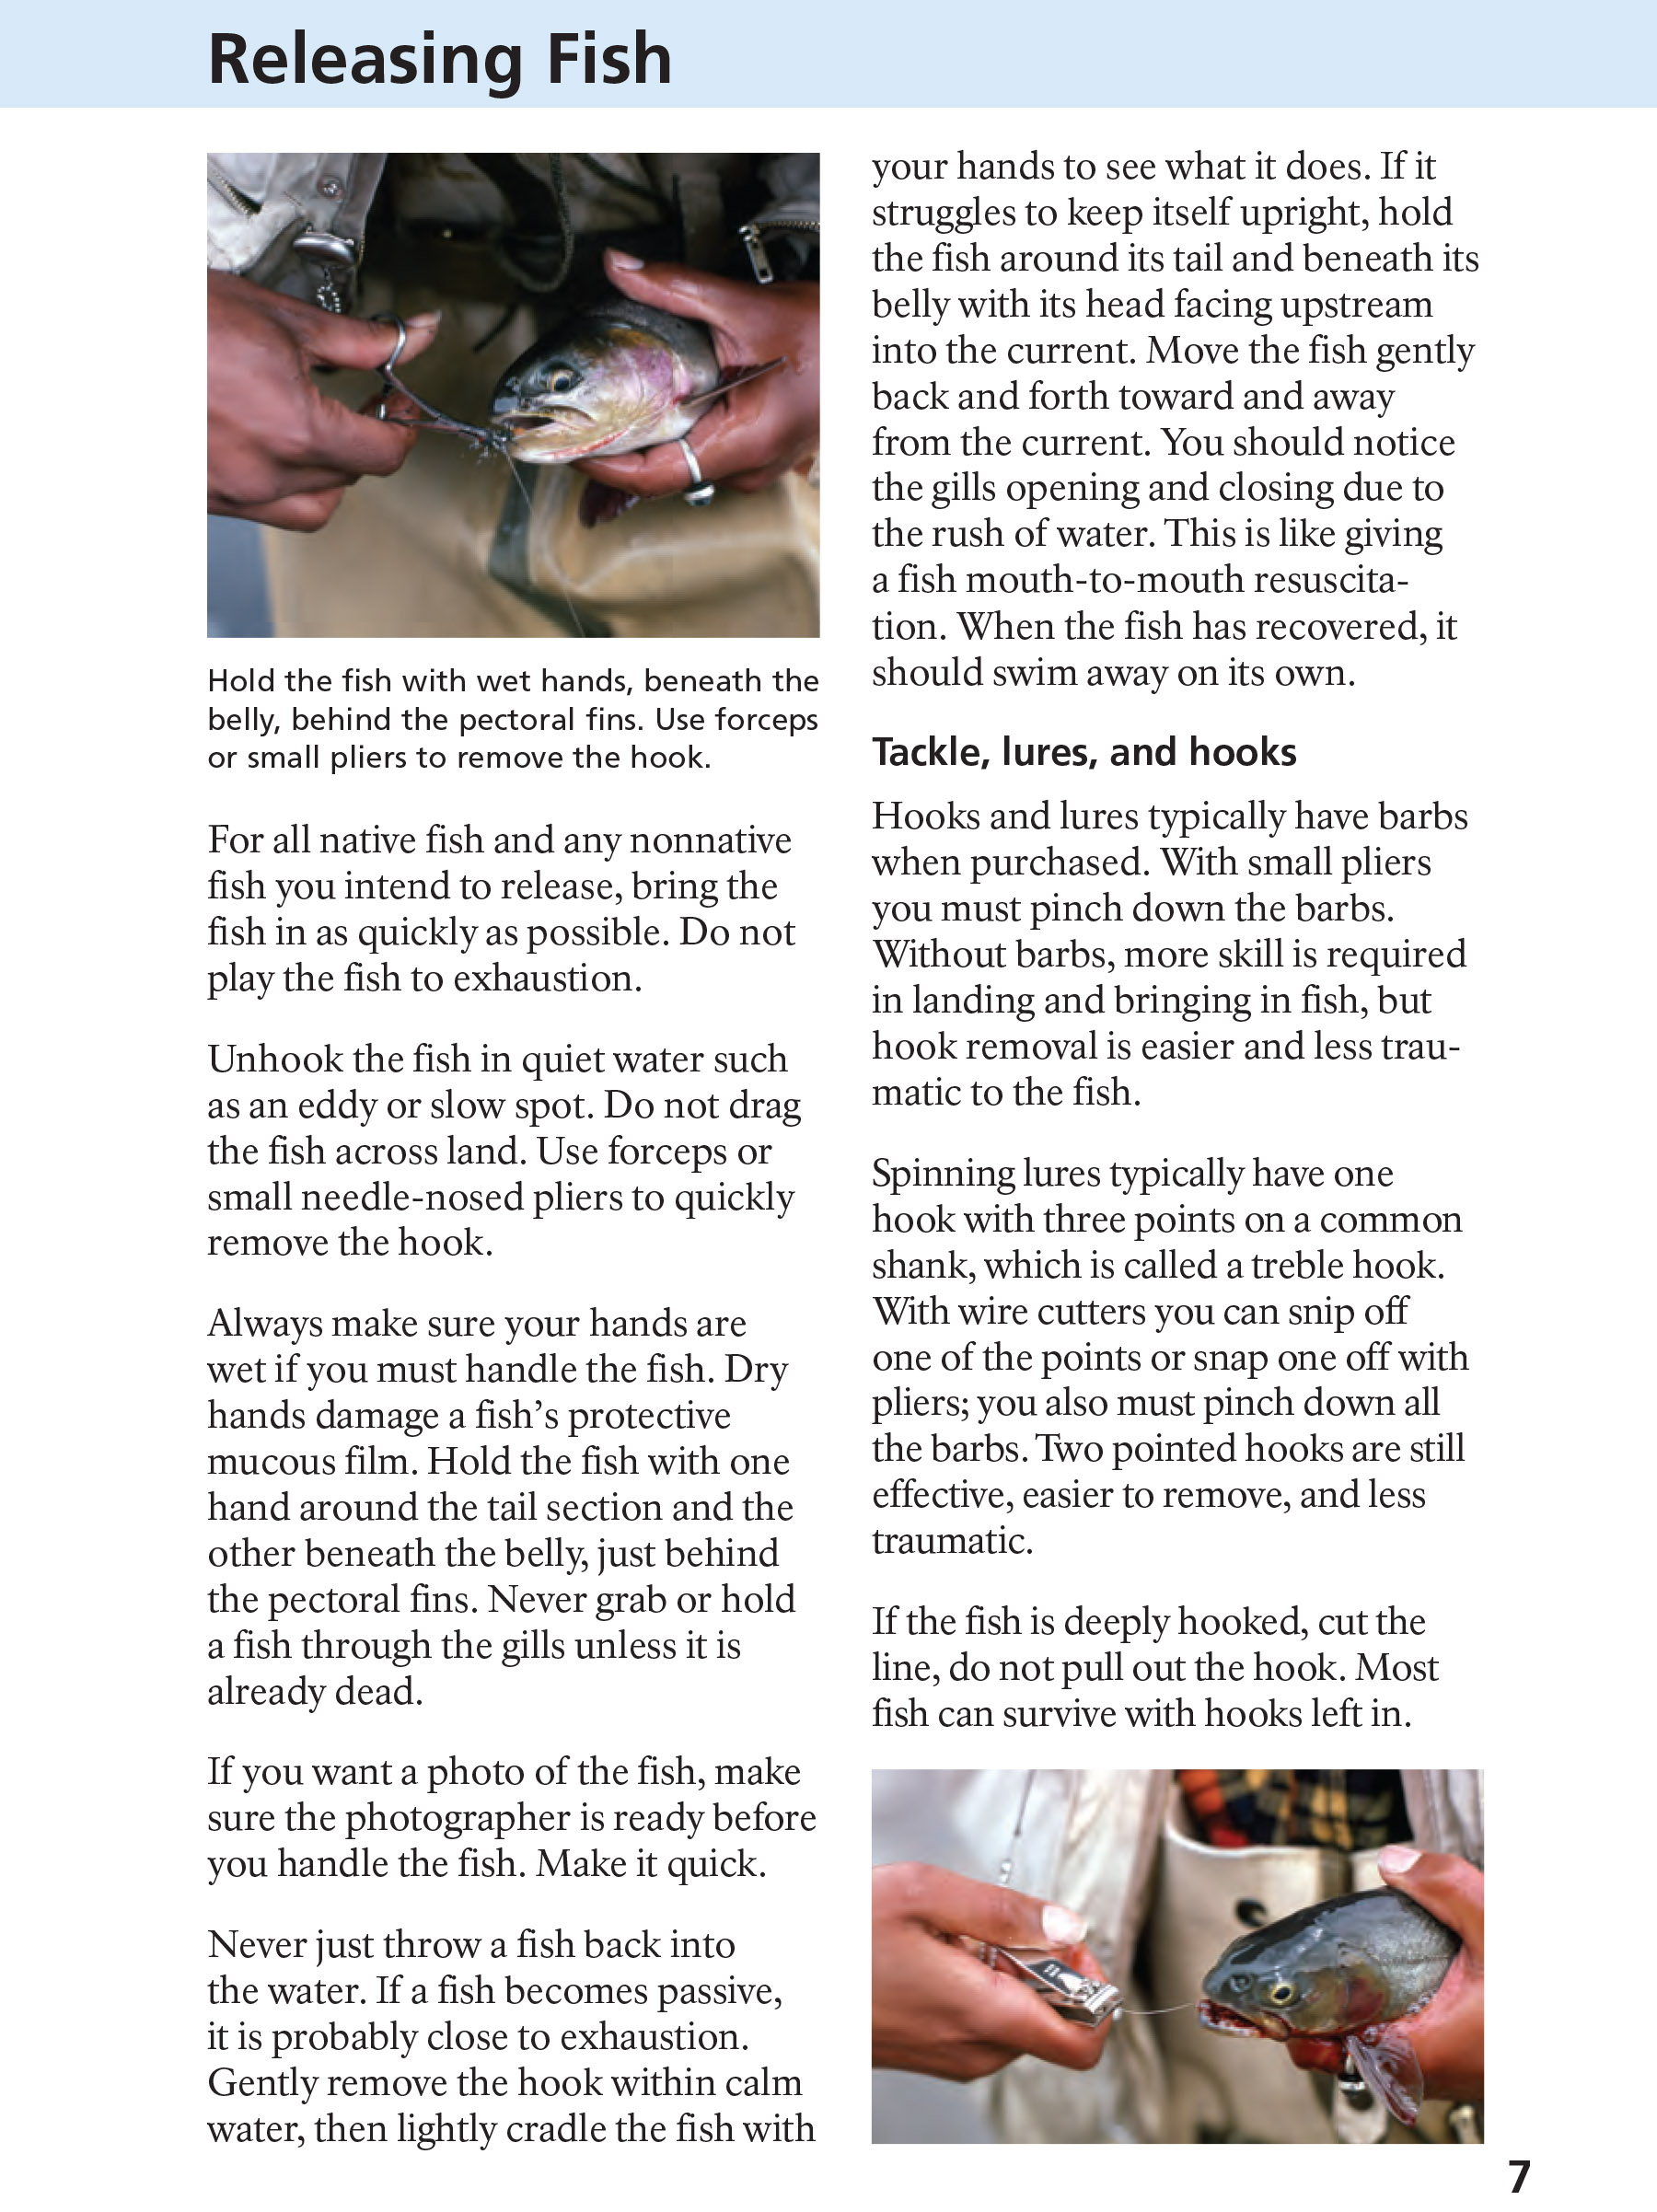 Yellowstone Fishing Regulations Page 7 - NPS Image